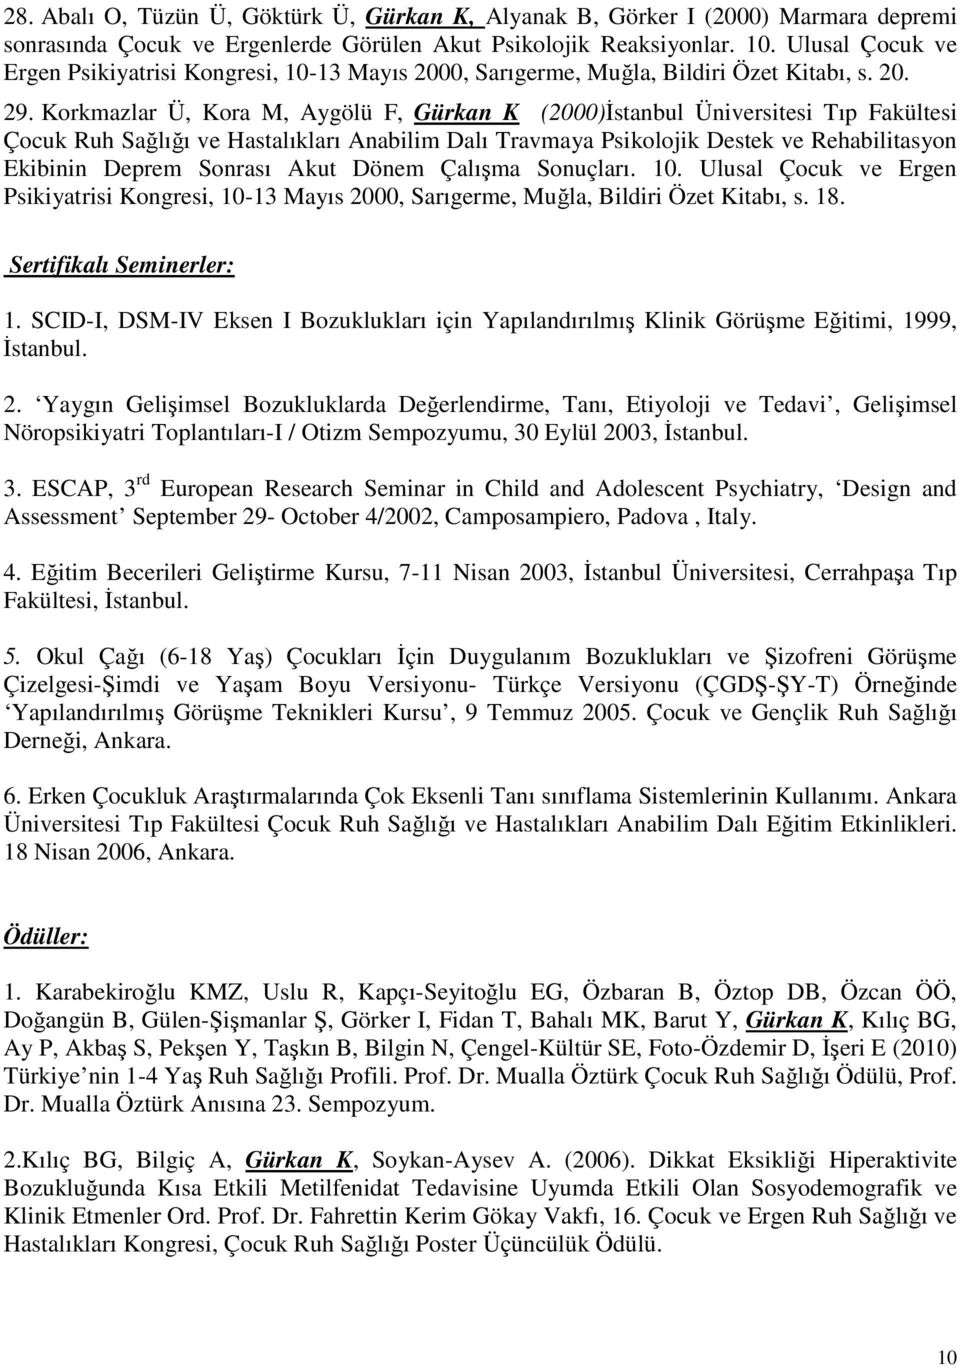 Korkmazlar Ü, Kora M, Aygölü F, Gürkan K (2000)İstanbul Üniversitesi Tıp Fakültesi Çocuk Ruh Sağlığı ve Hastalıkları Anabilim Dalı Travmaya Psikolojik Destek ve Rehabilitasyon Ekibinin Deprem Sonrası